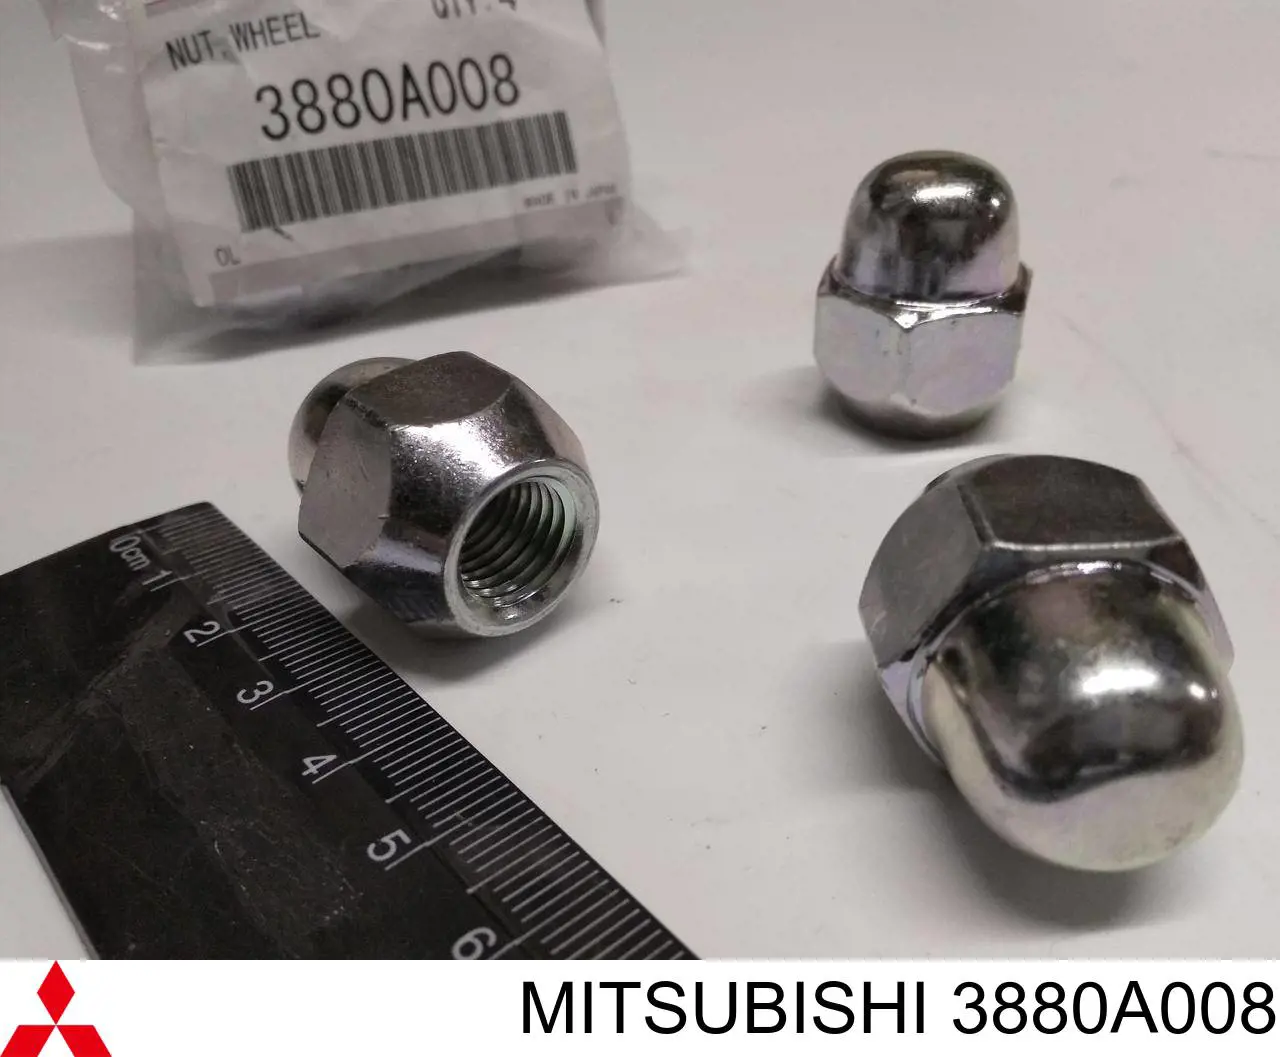 3880A008 Mitsubishi porca de roda